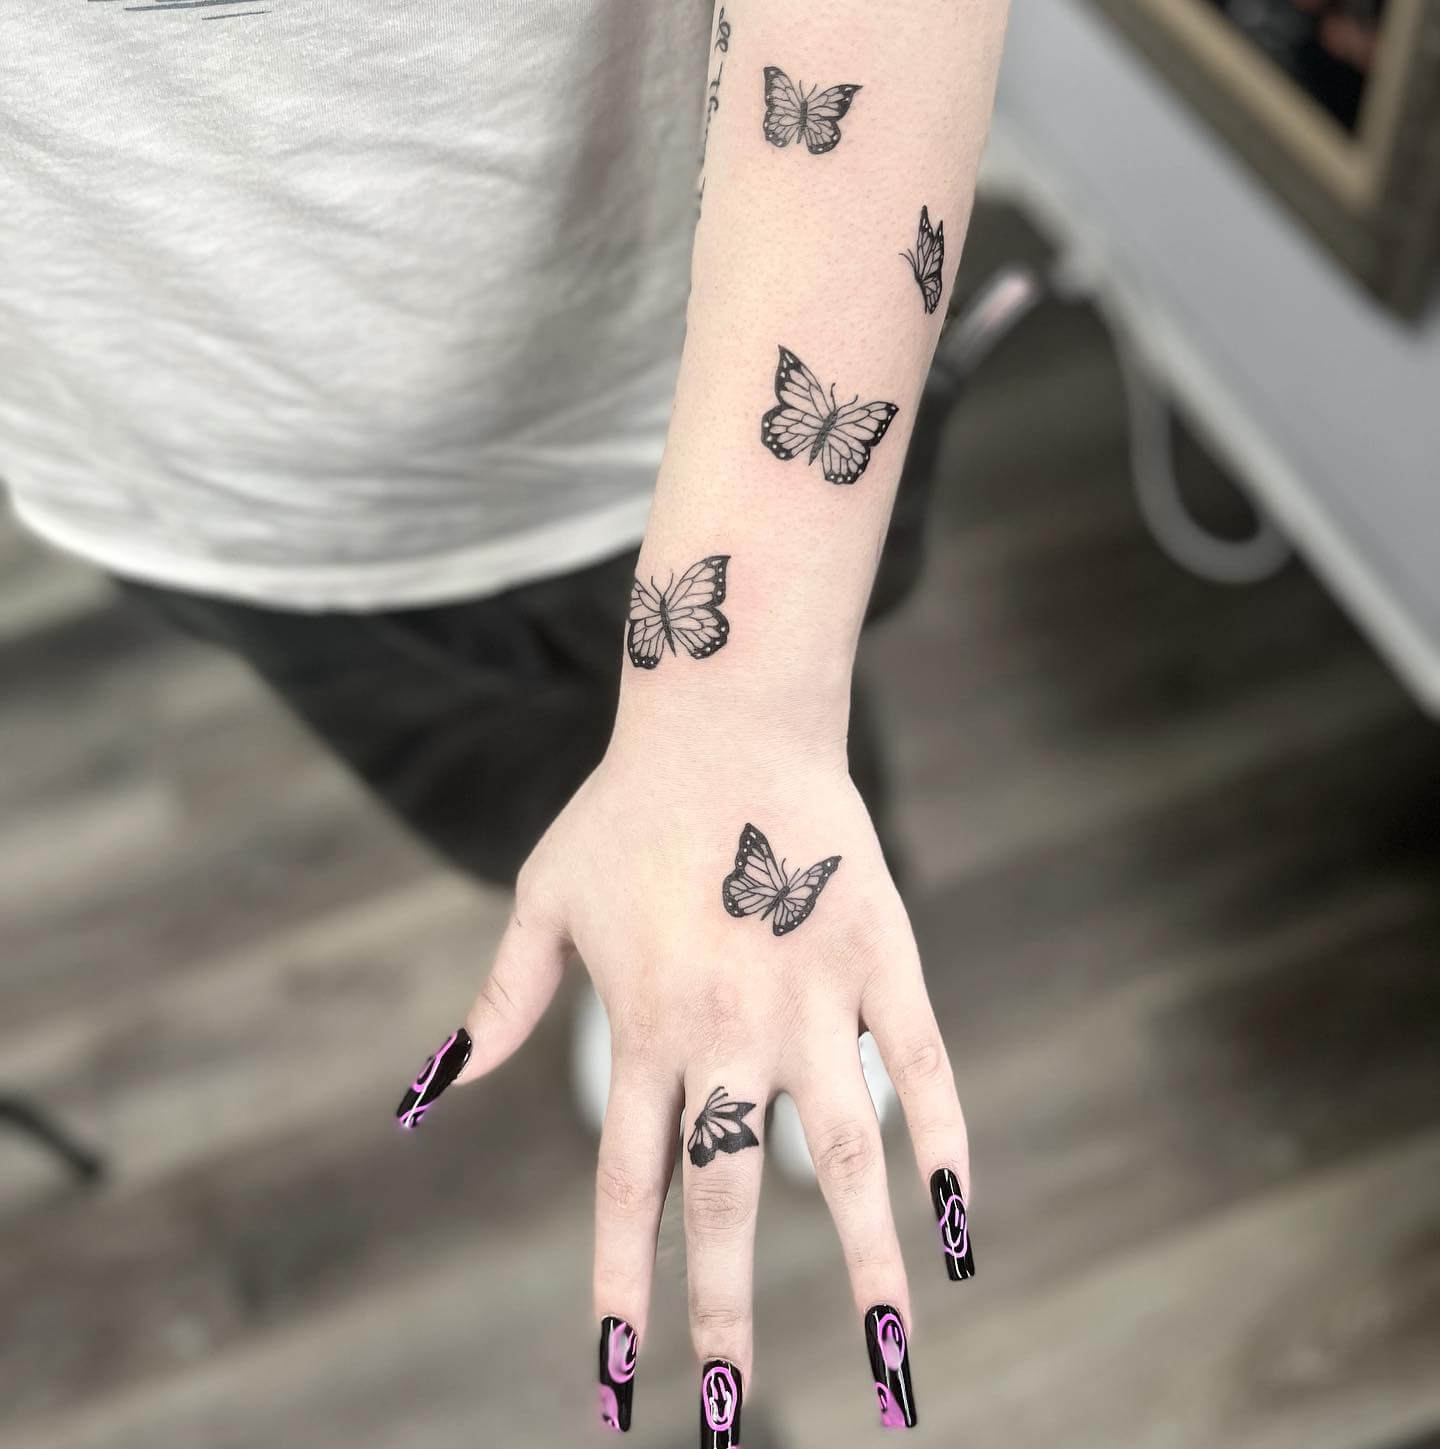 Butterfly hand tattoo  Hand tattoos Butterfly hand tattoo Small wrist  tattoos